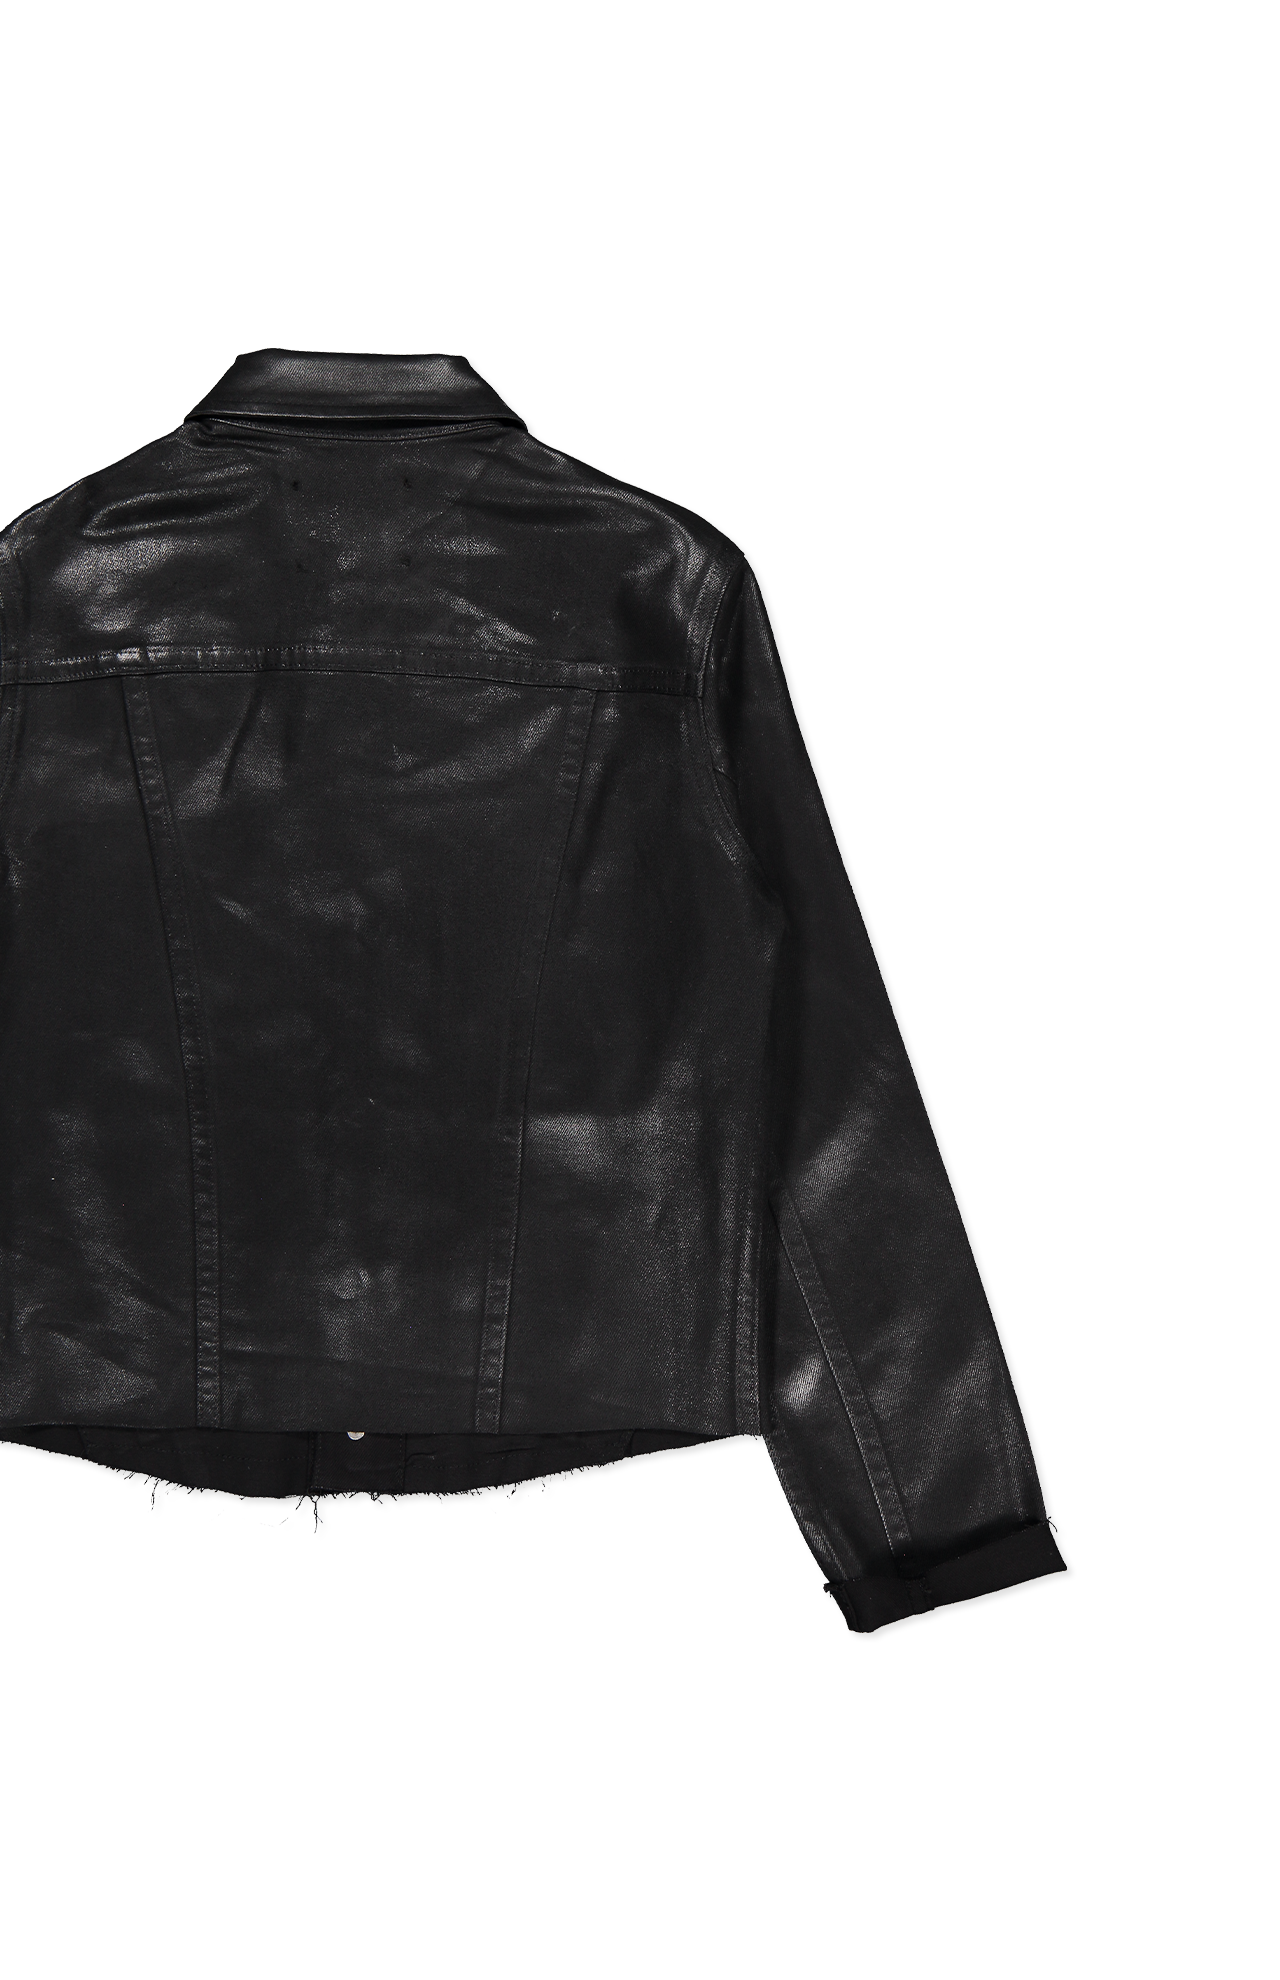 Lagence Janelle Slim Jacket Back Flat Lay Image (6990794424435)